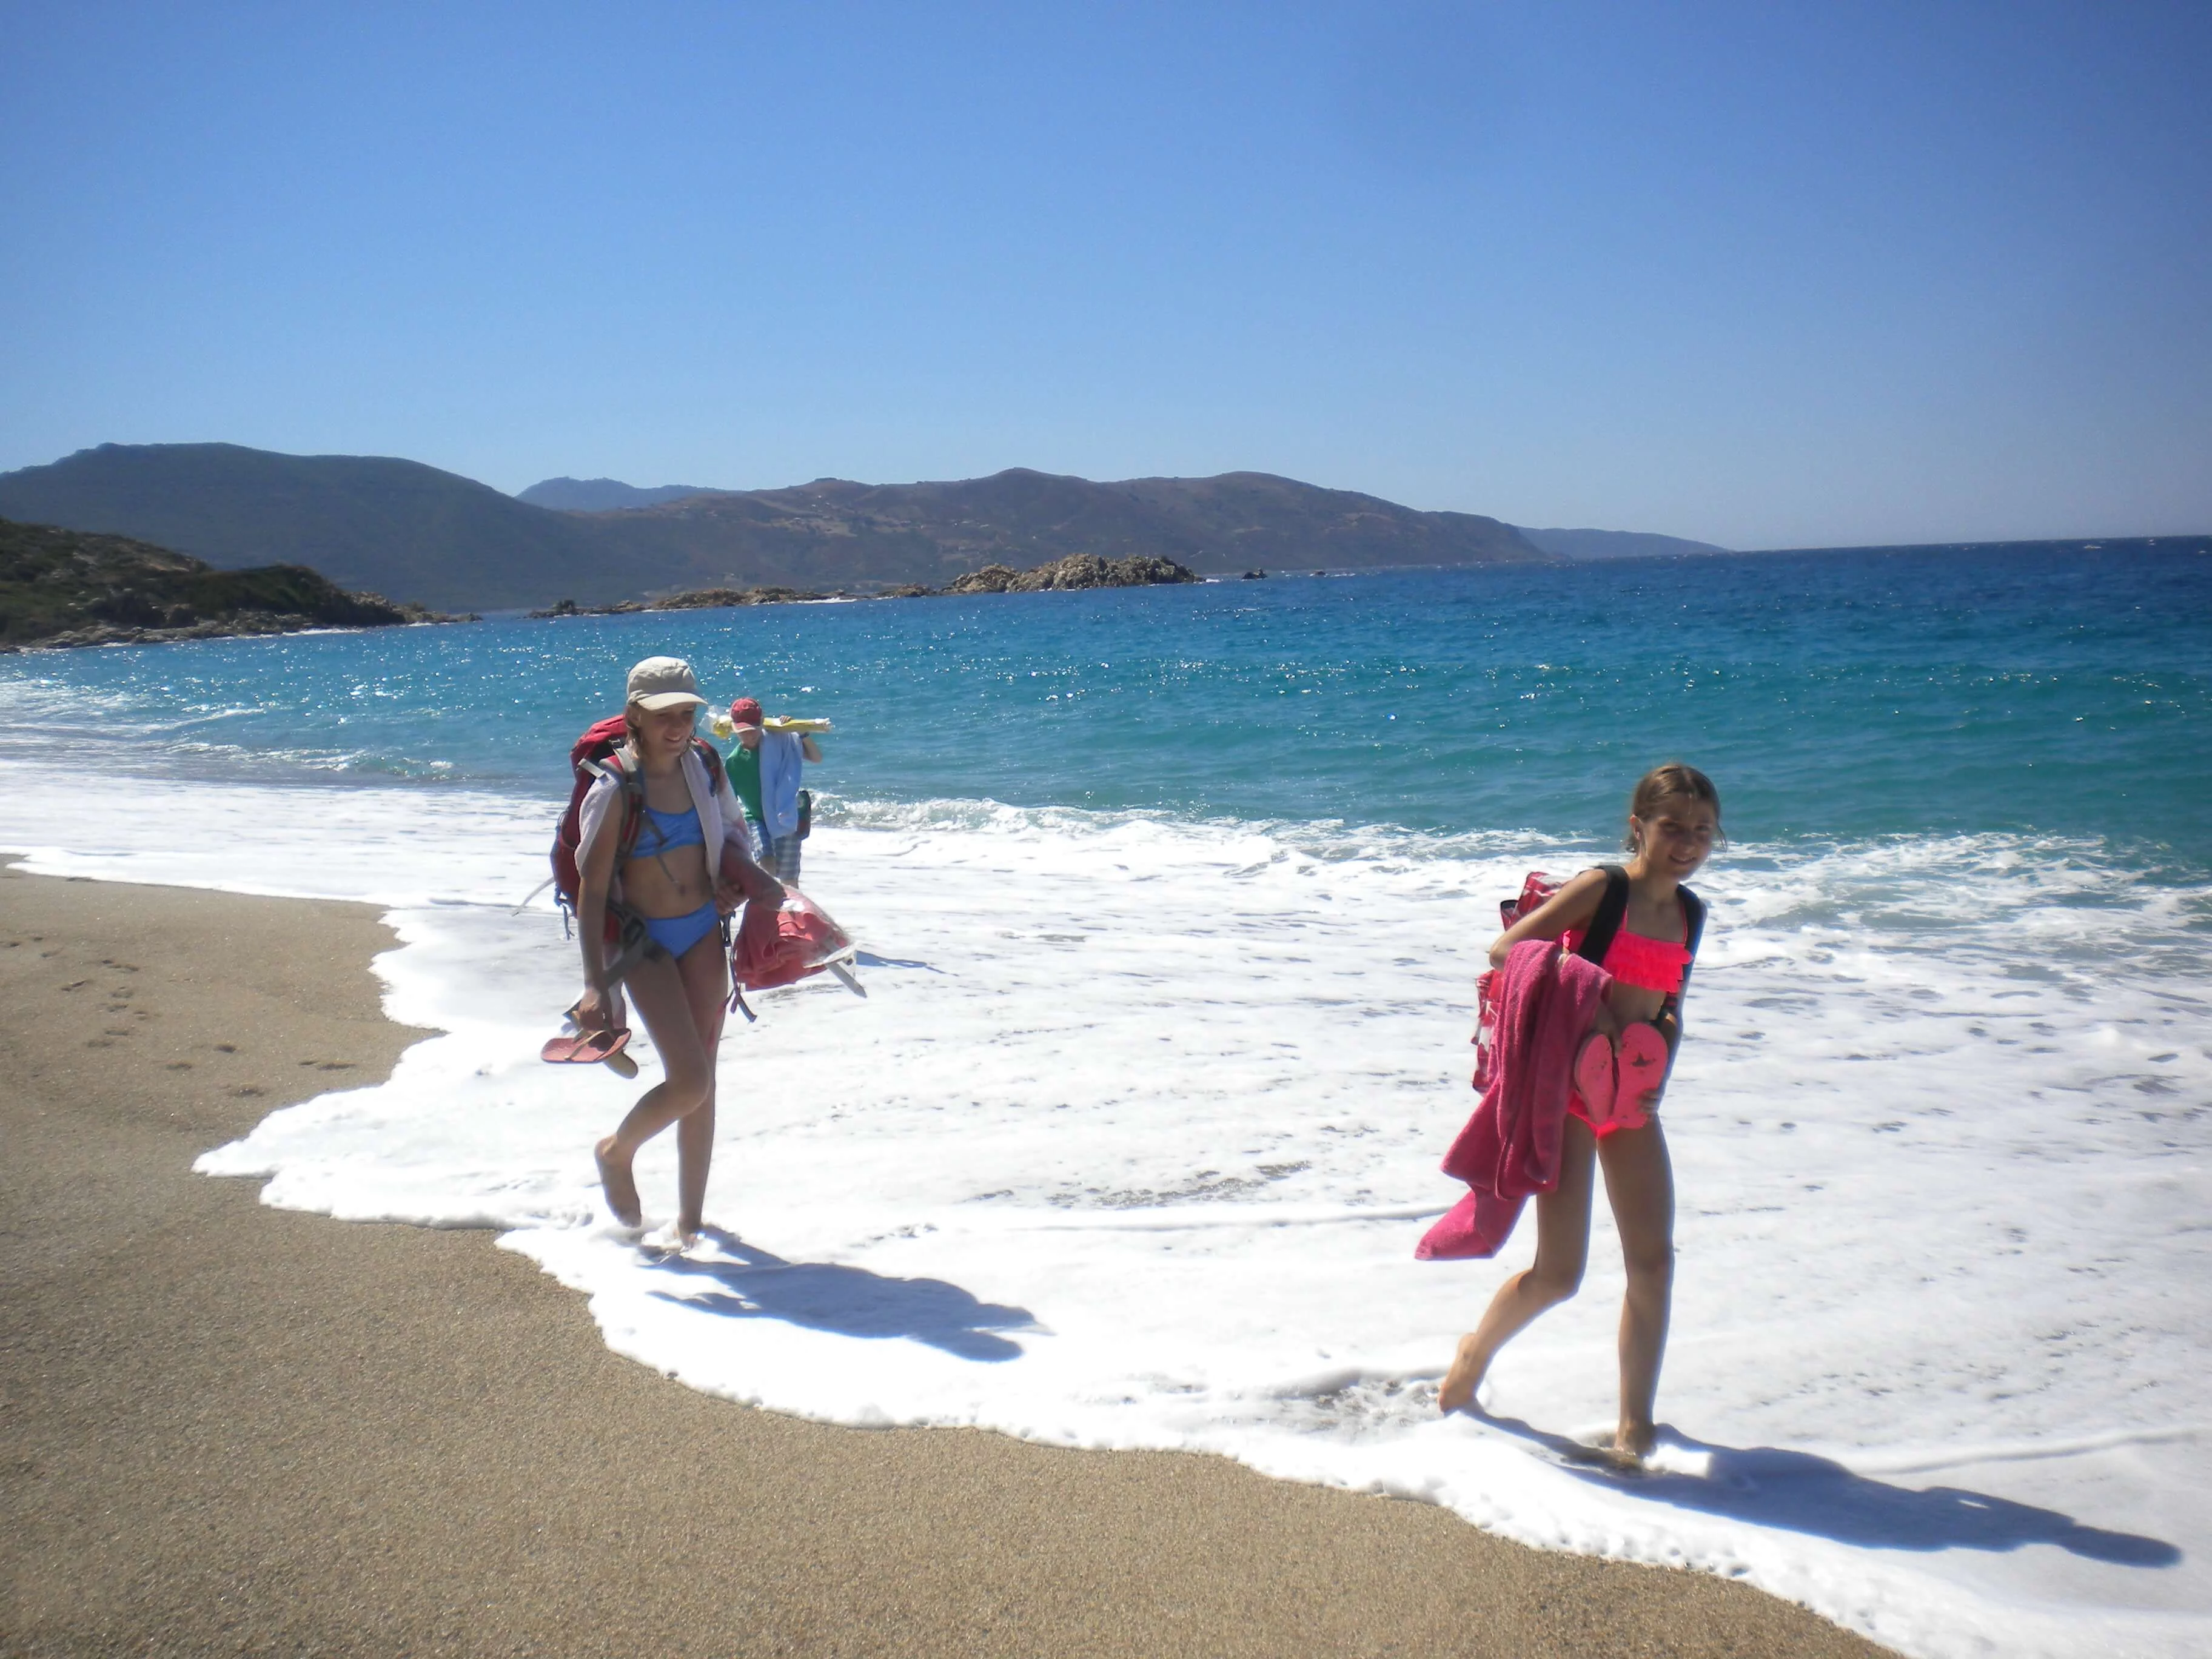 Jugendliche auf dem Weg zum Strand lassen sich von den Wellen die Füße nass machen